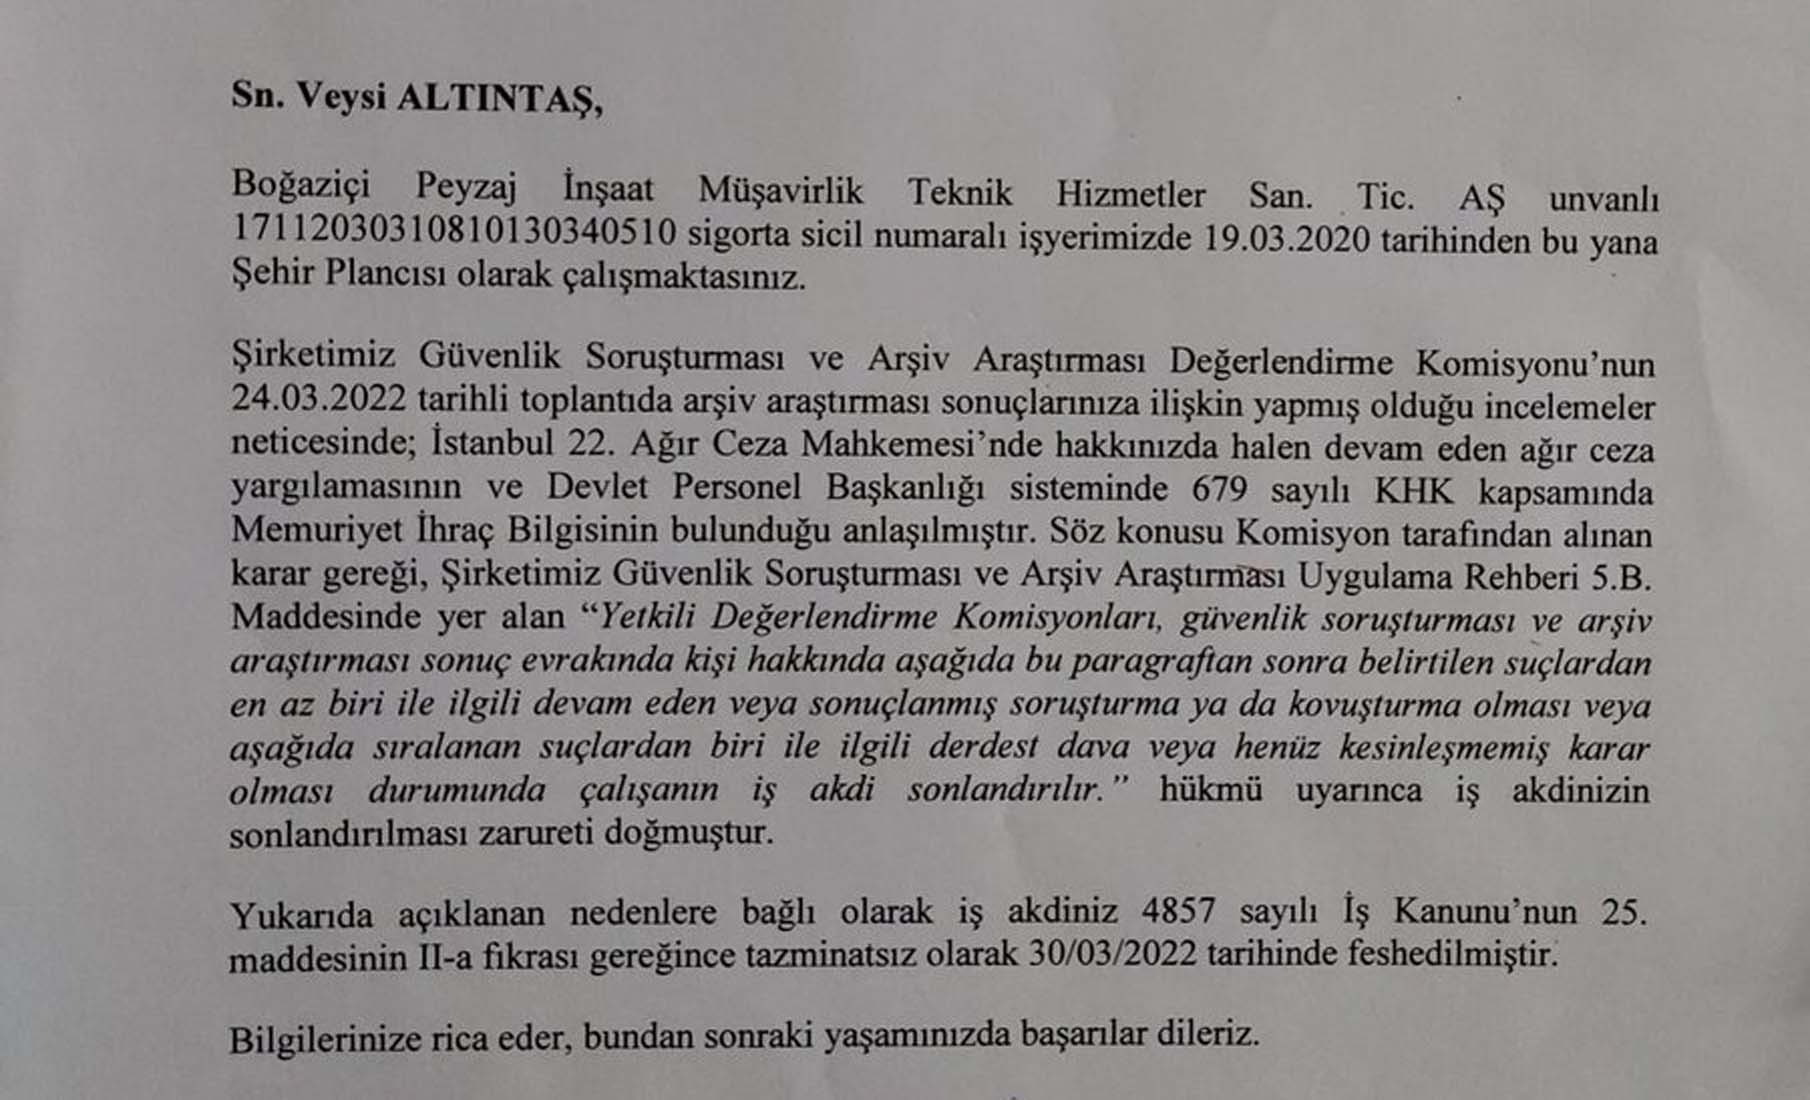 Bakanlığın özel soruşturmasını duyan CHP yönetiminin eteği tutuştu! PKK'lı personeller apar topar İBB'den çıkarıldı!